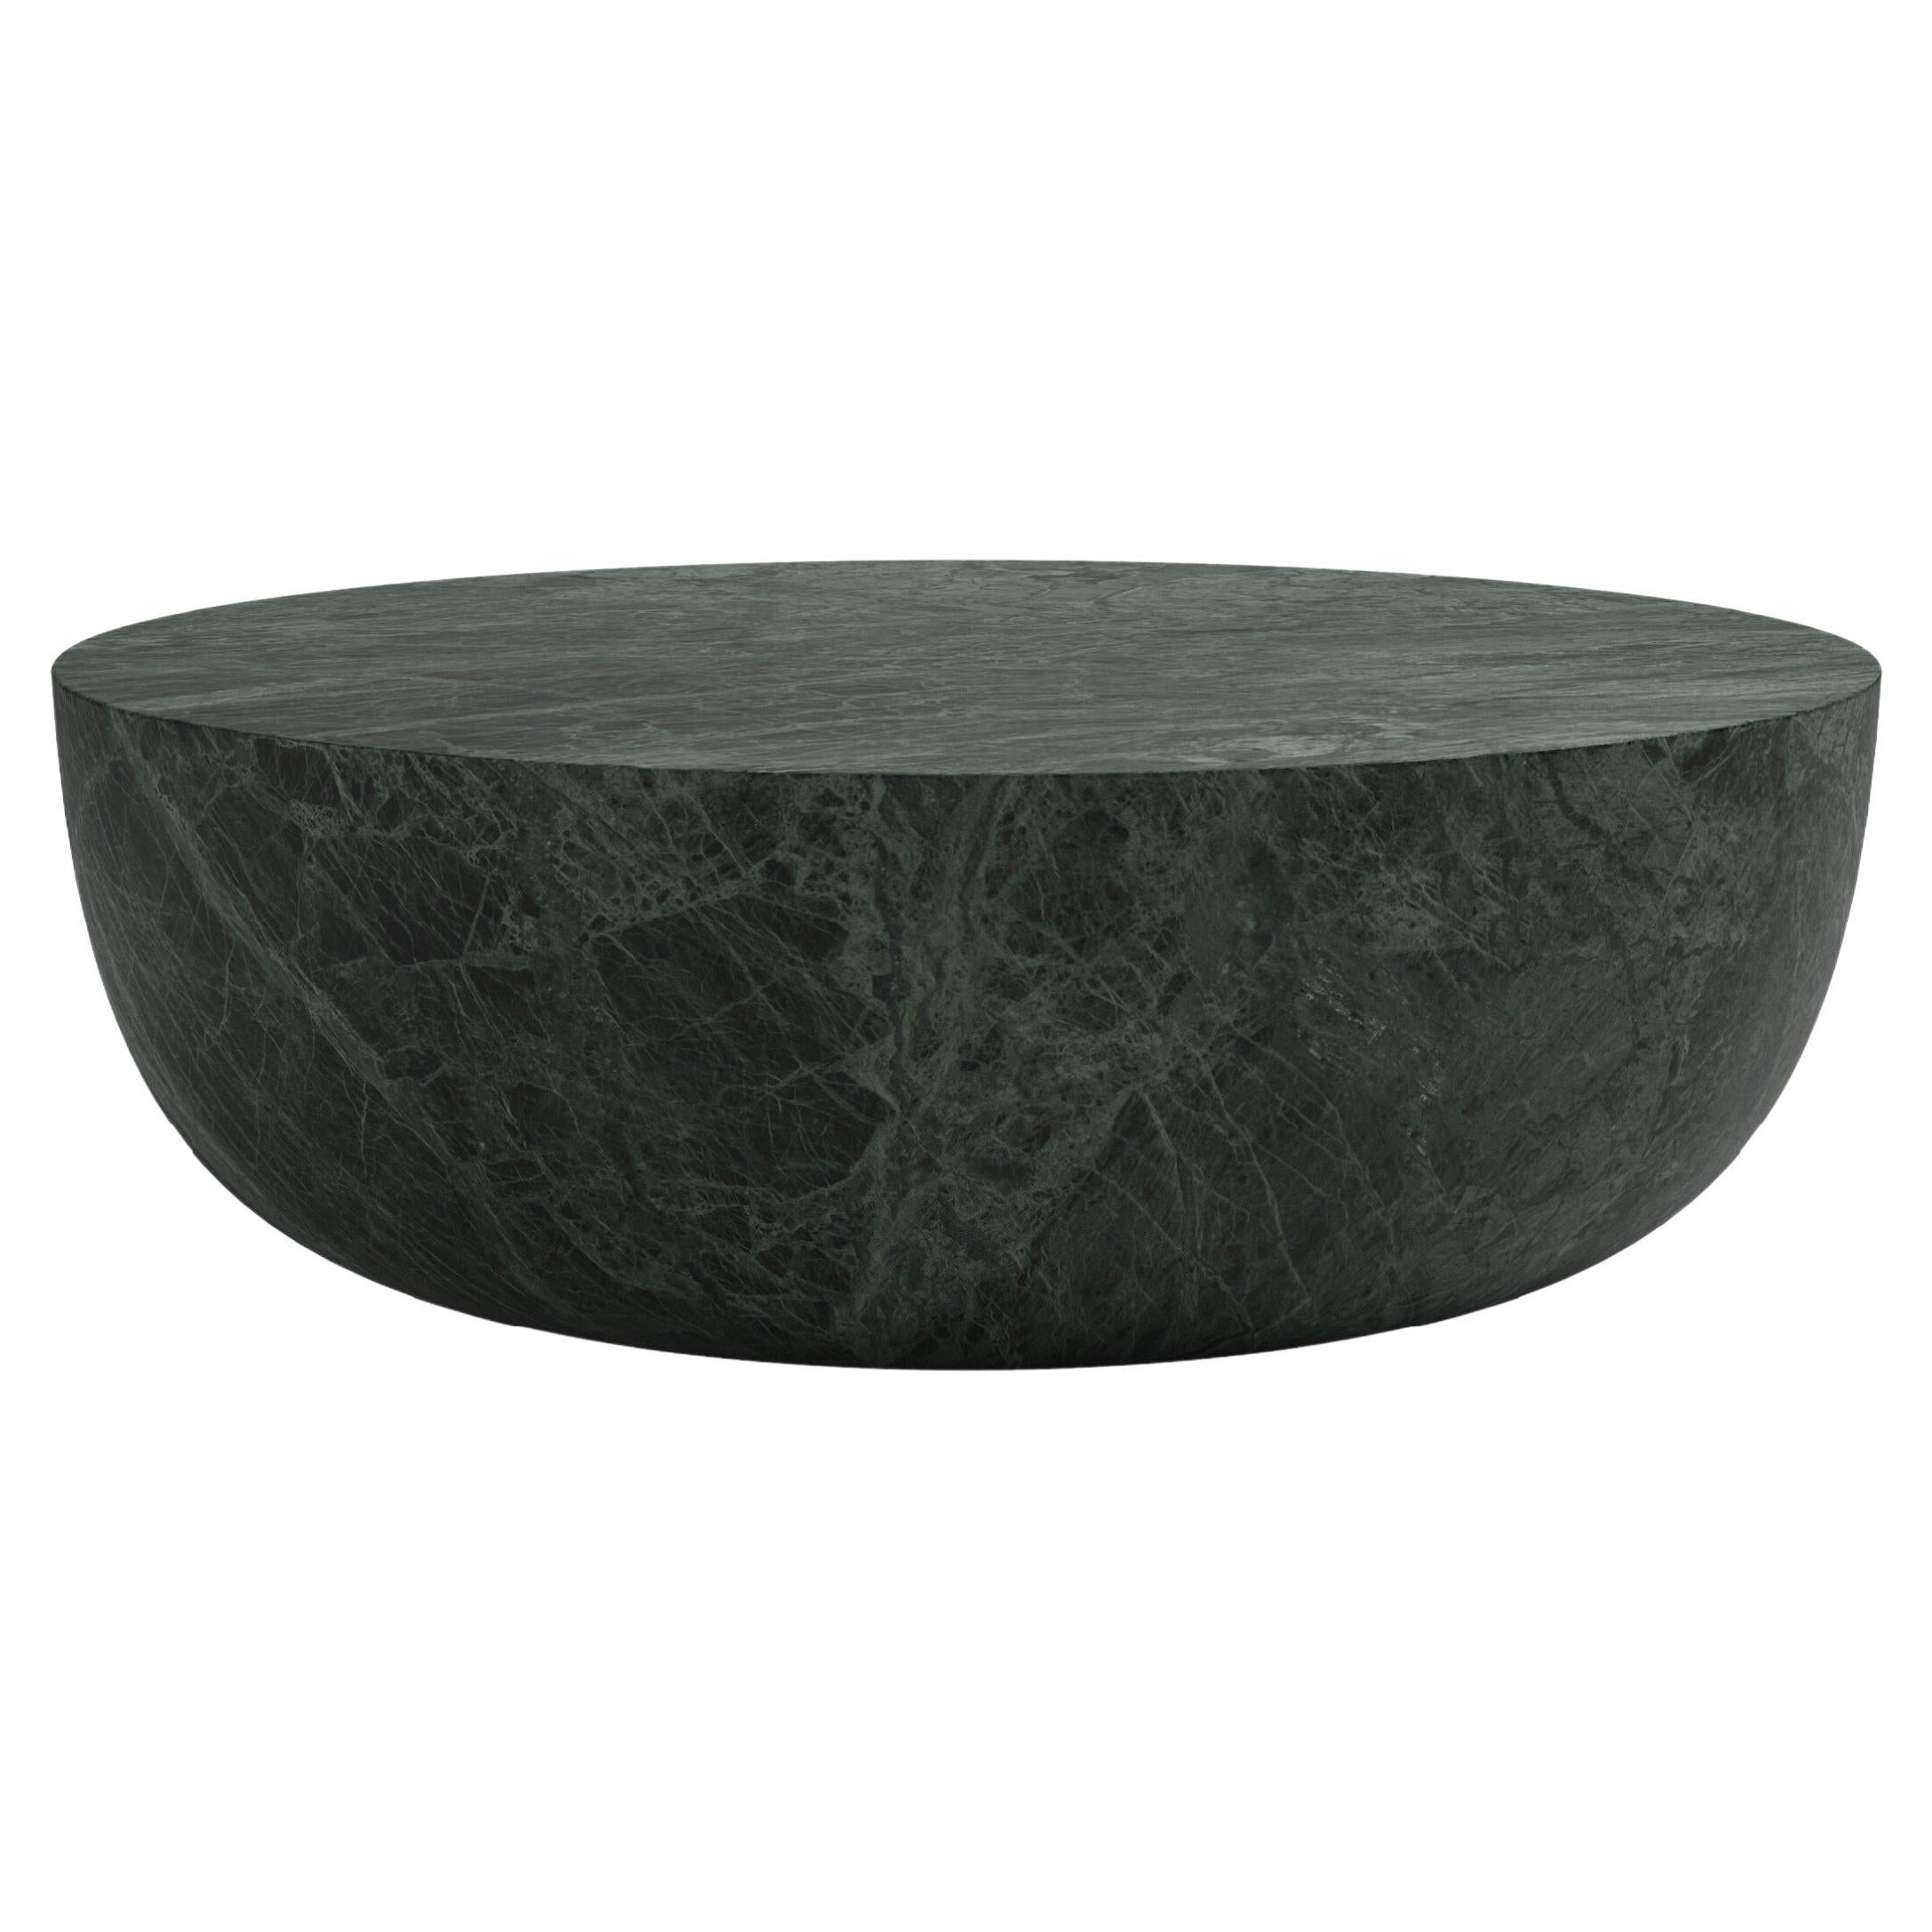 FORM(LA) Sfera Round Coffee Table 60”L x 60”W x 16”H Verde Guatemala Marble